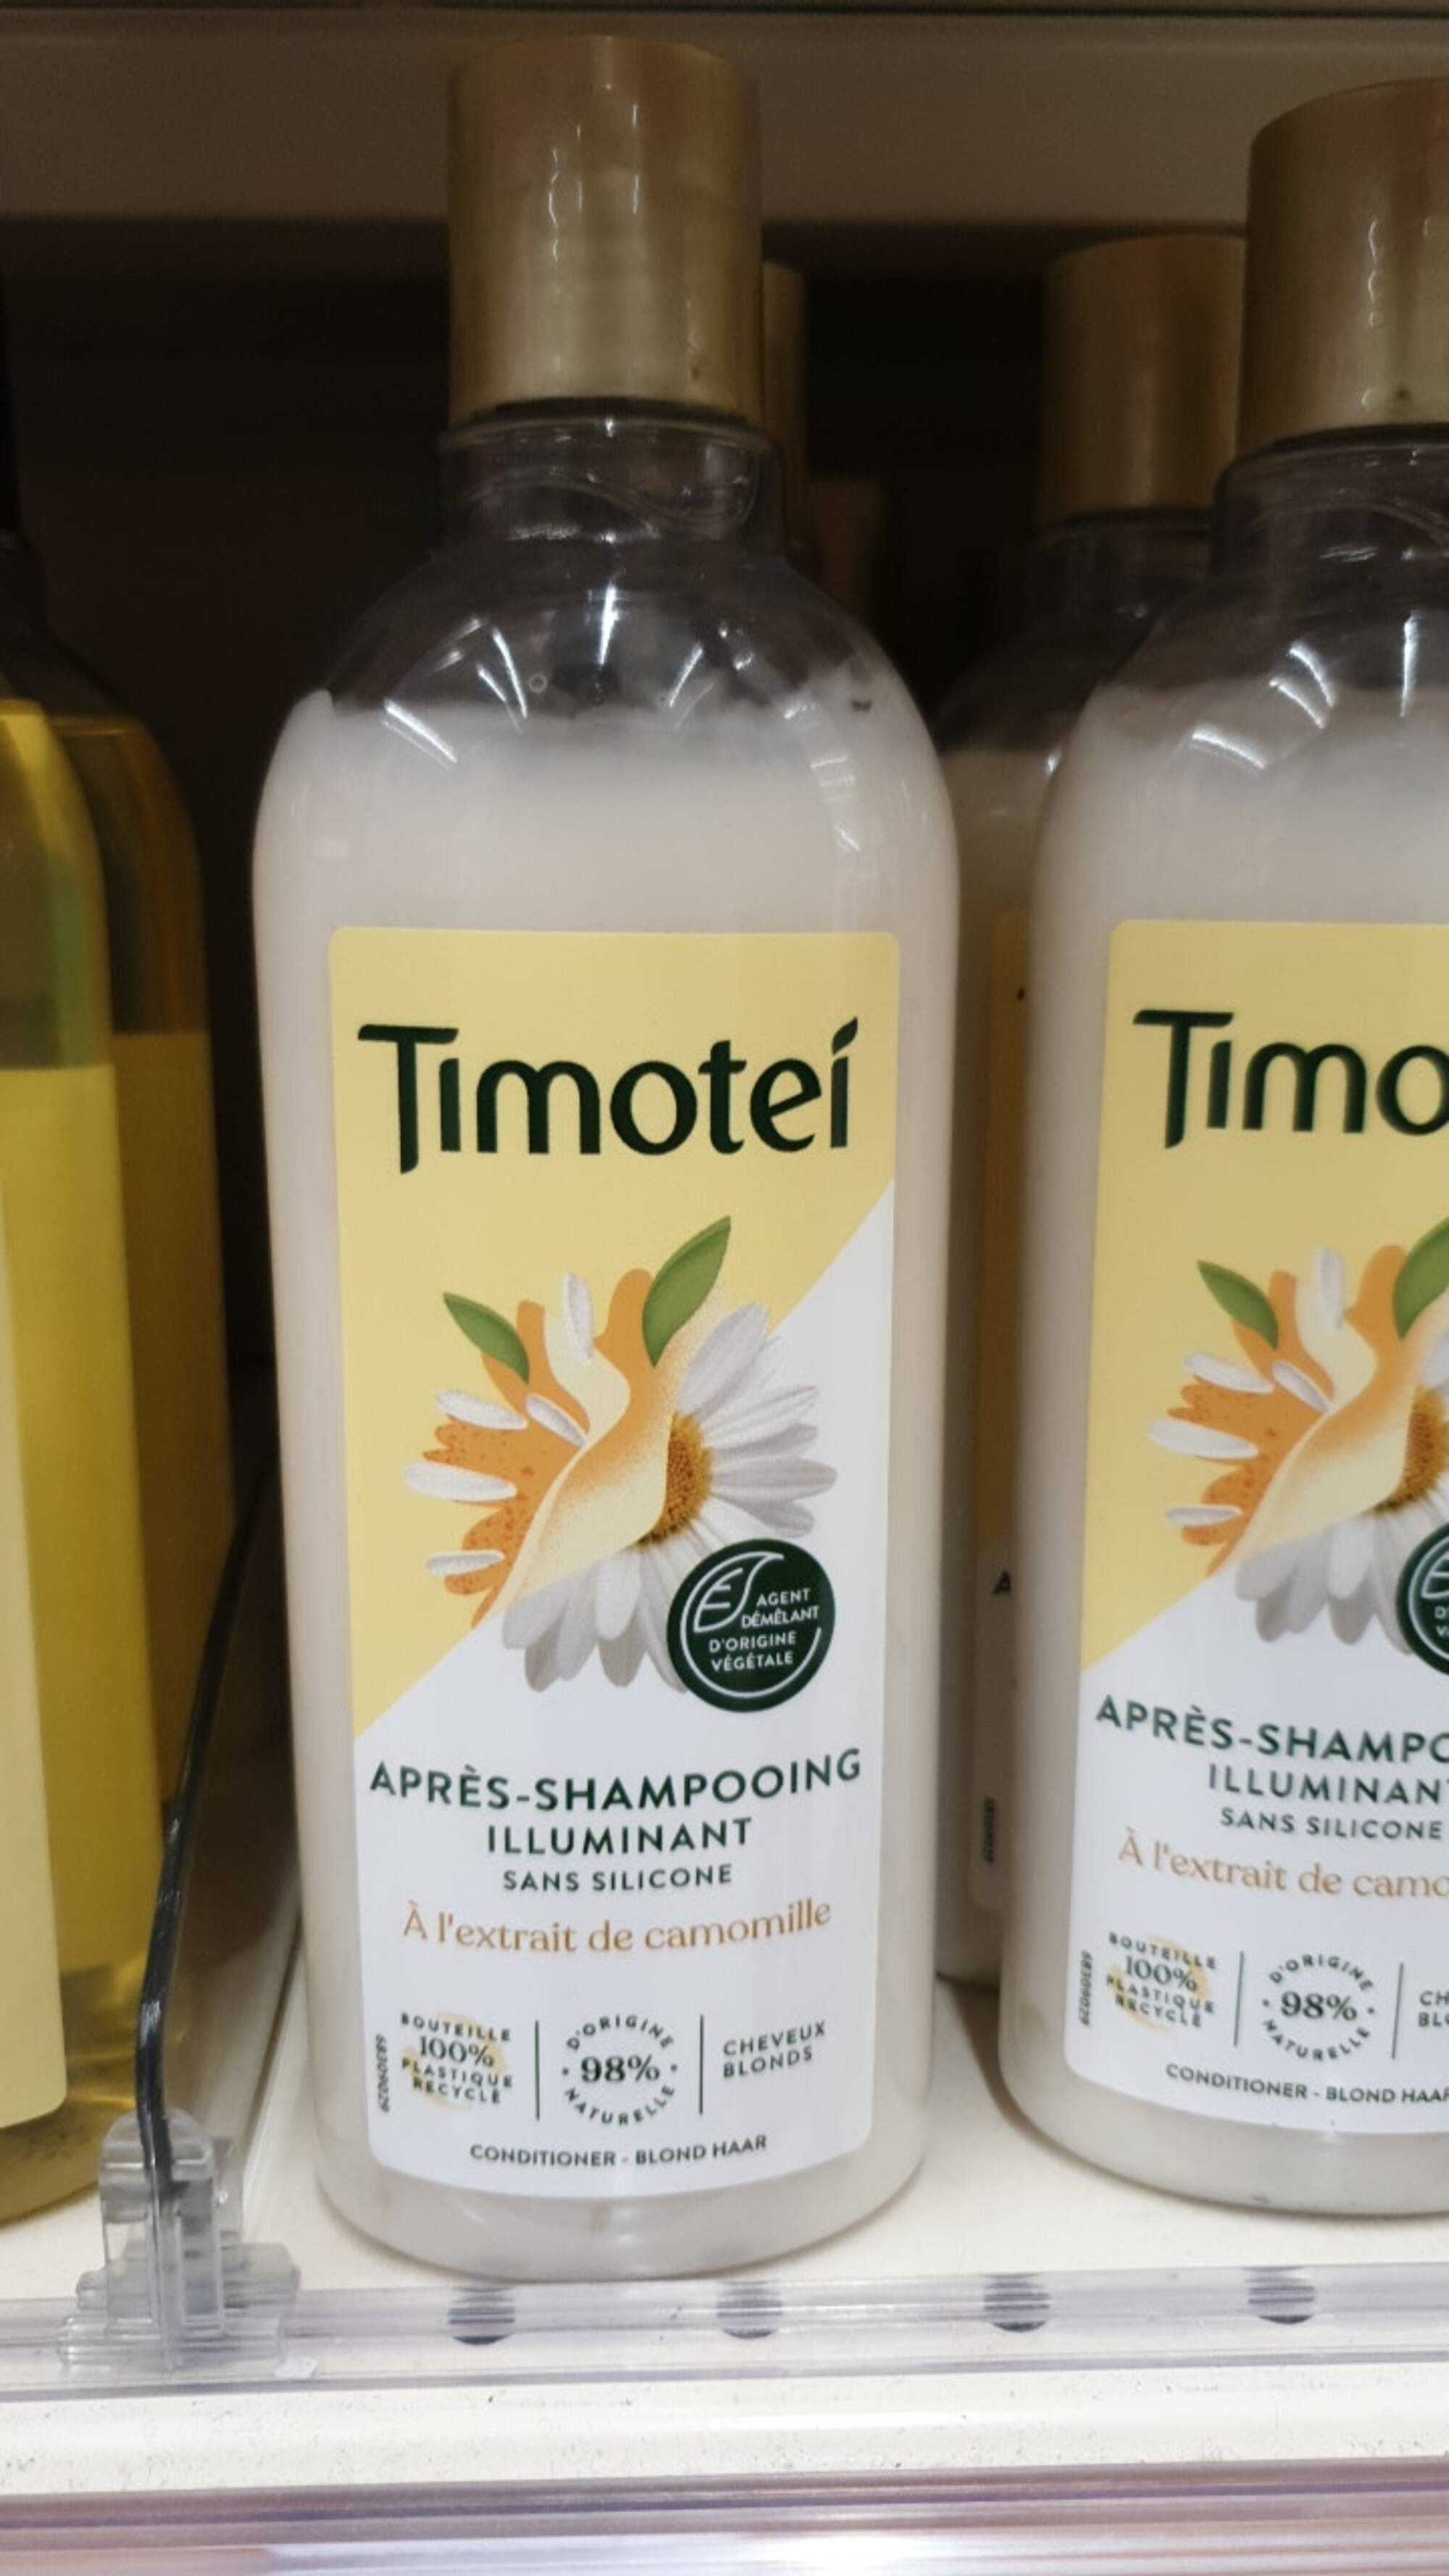 TIMOTEI - Après-shampooing illuminant à l'extrait de camomille